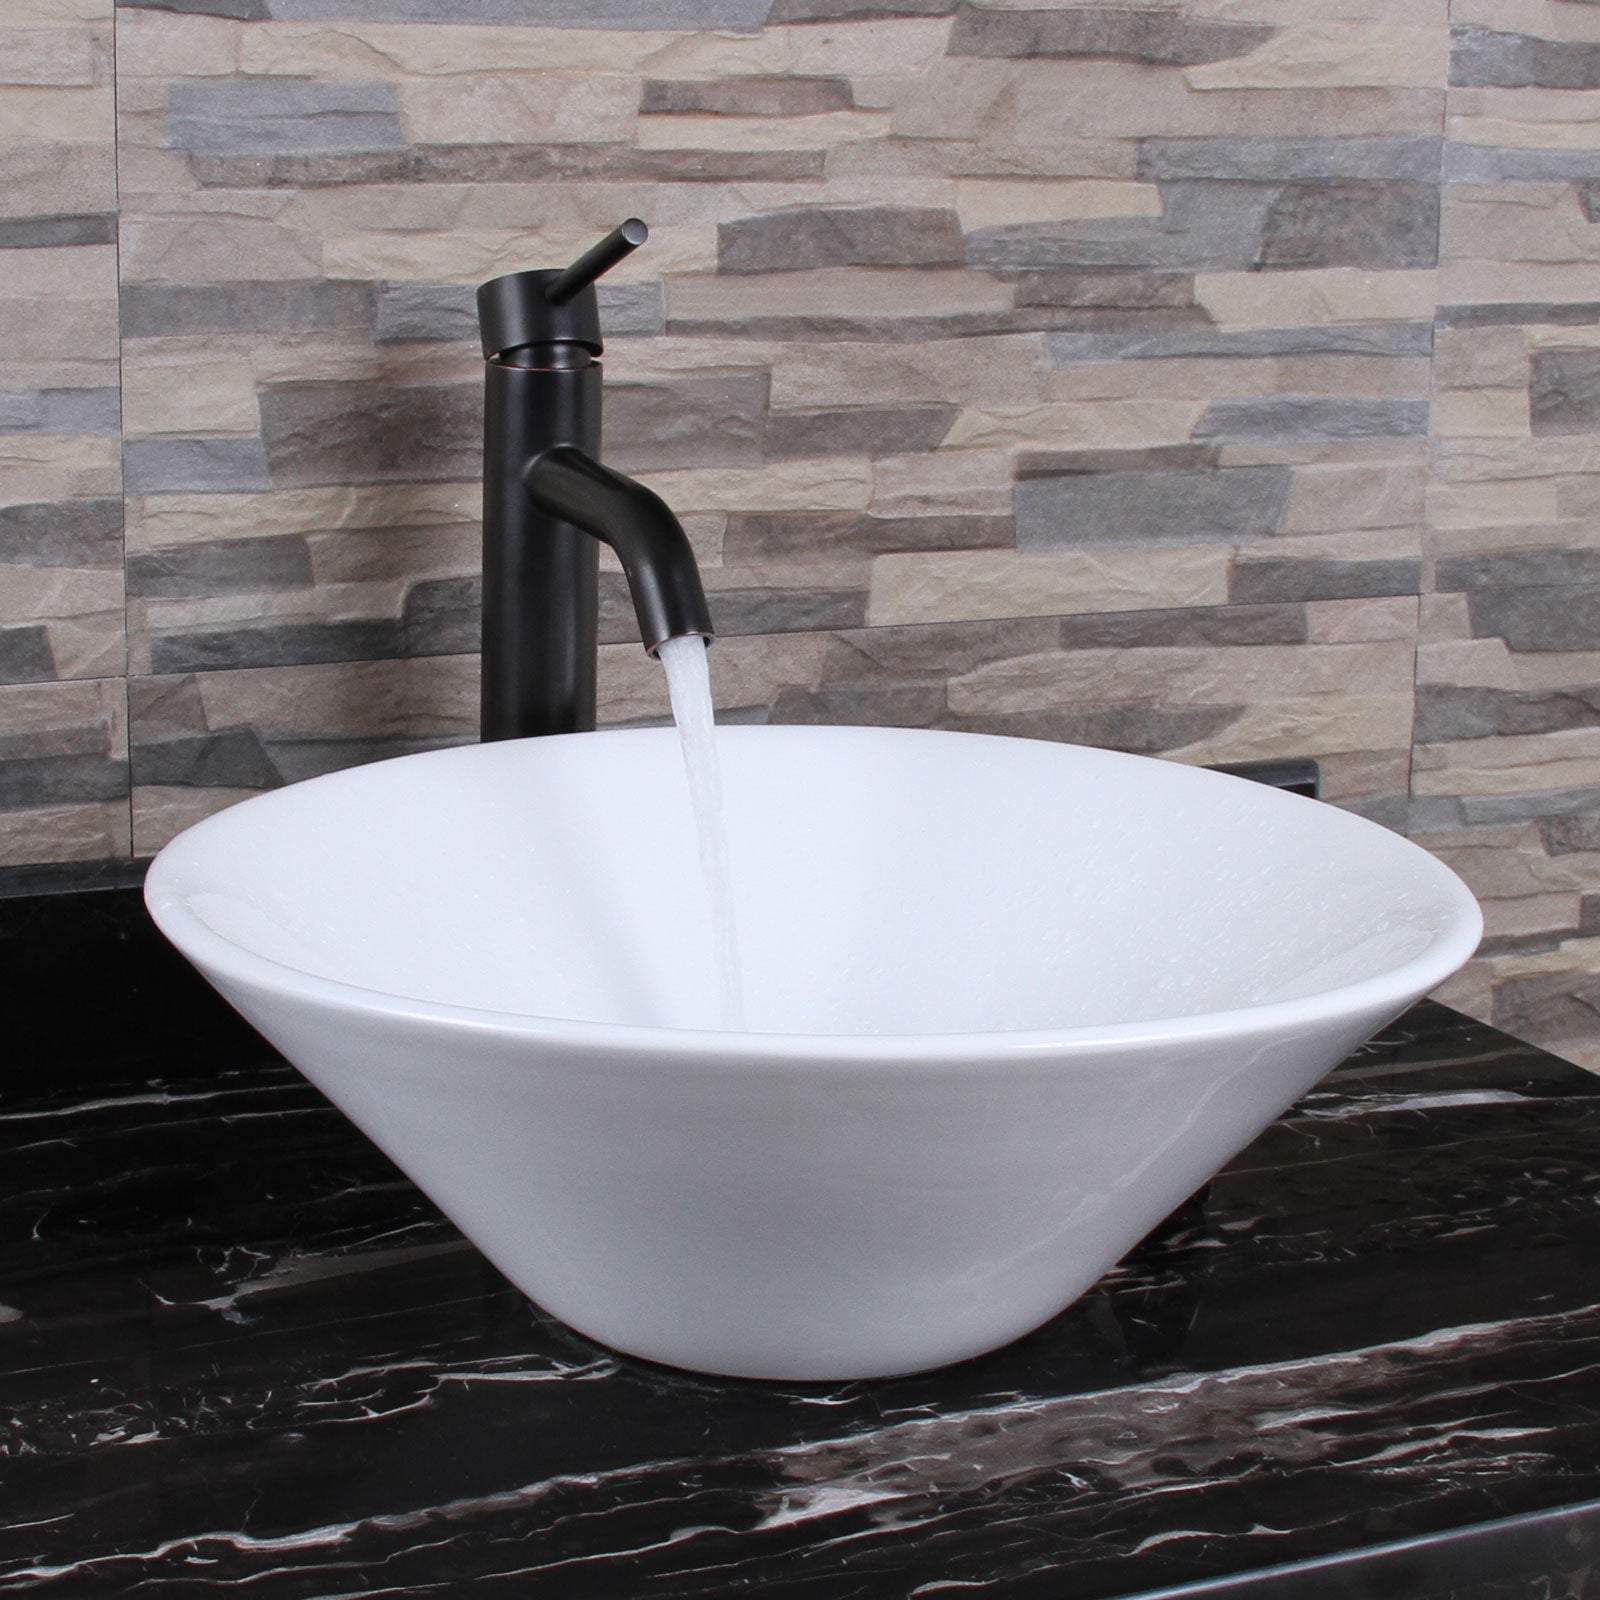 ELITE 303 Unique Funnel Shape White Porcelain Ceramic Bathroom Vessel Sink & F371023 Single Lever Faucet Combo